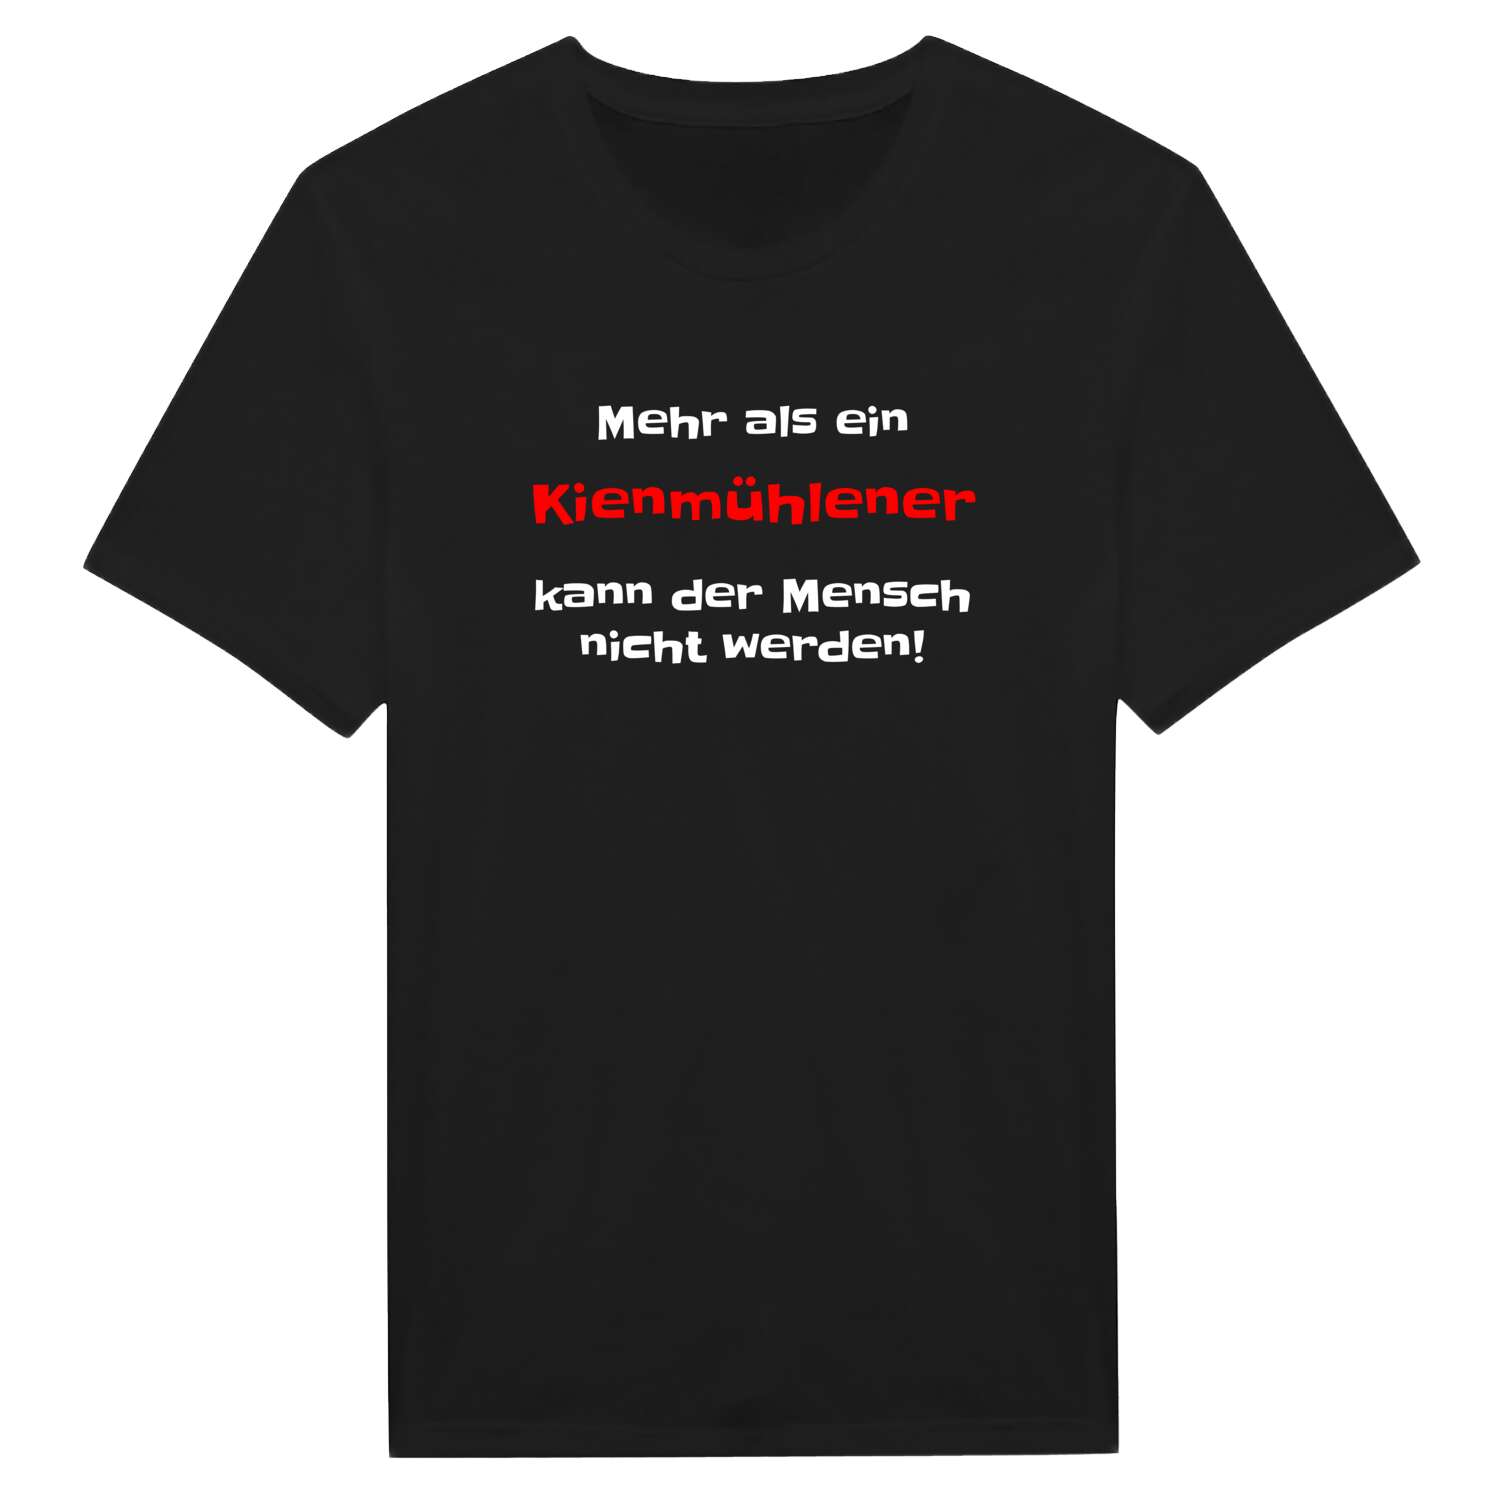 Kienmühle T-Shirt »Mehr als ein«